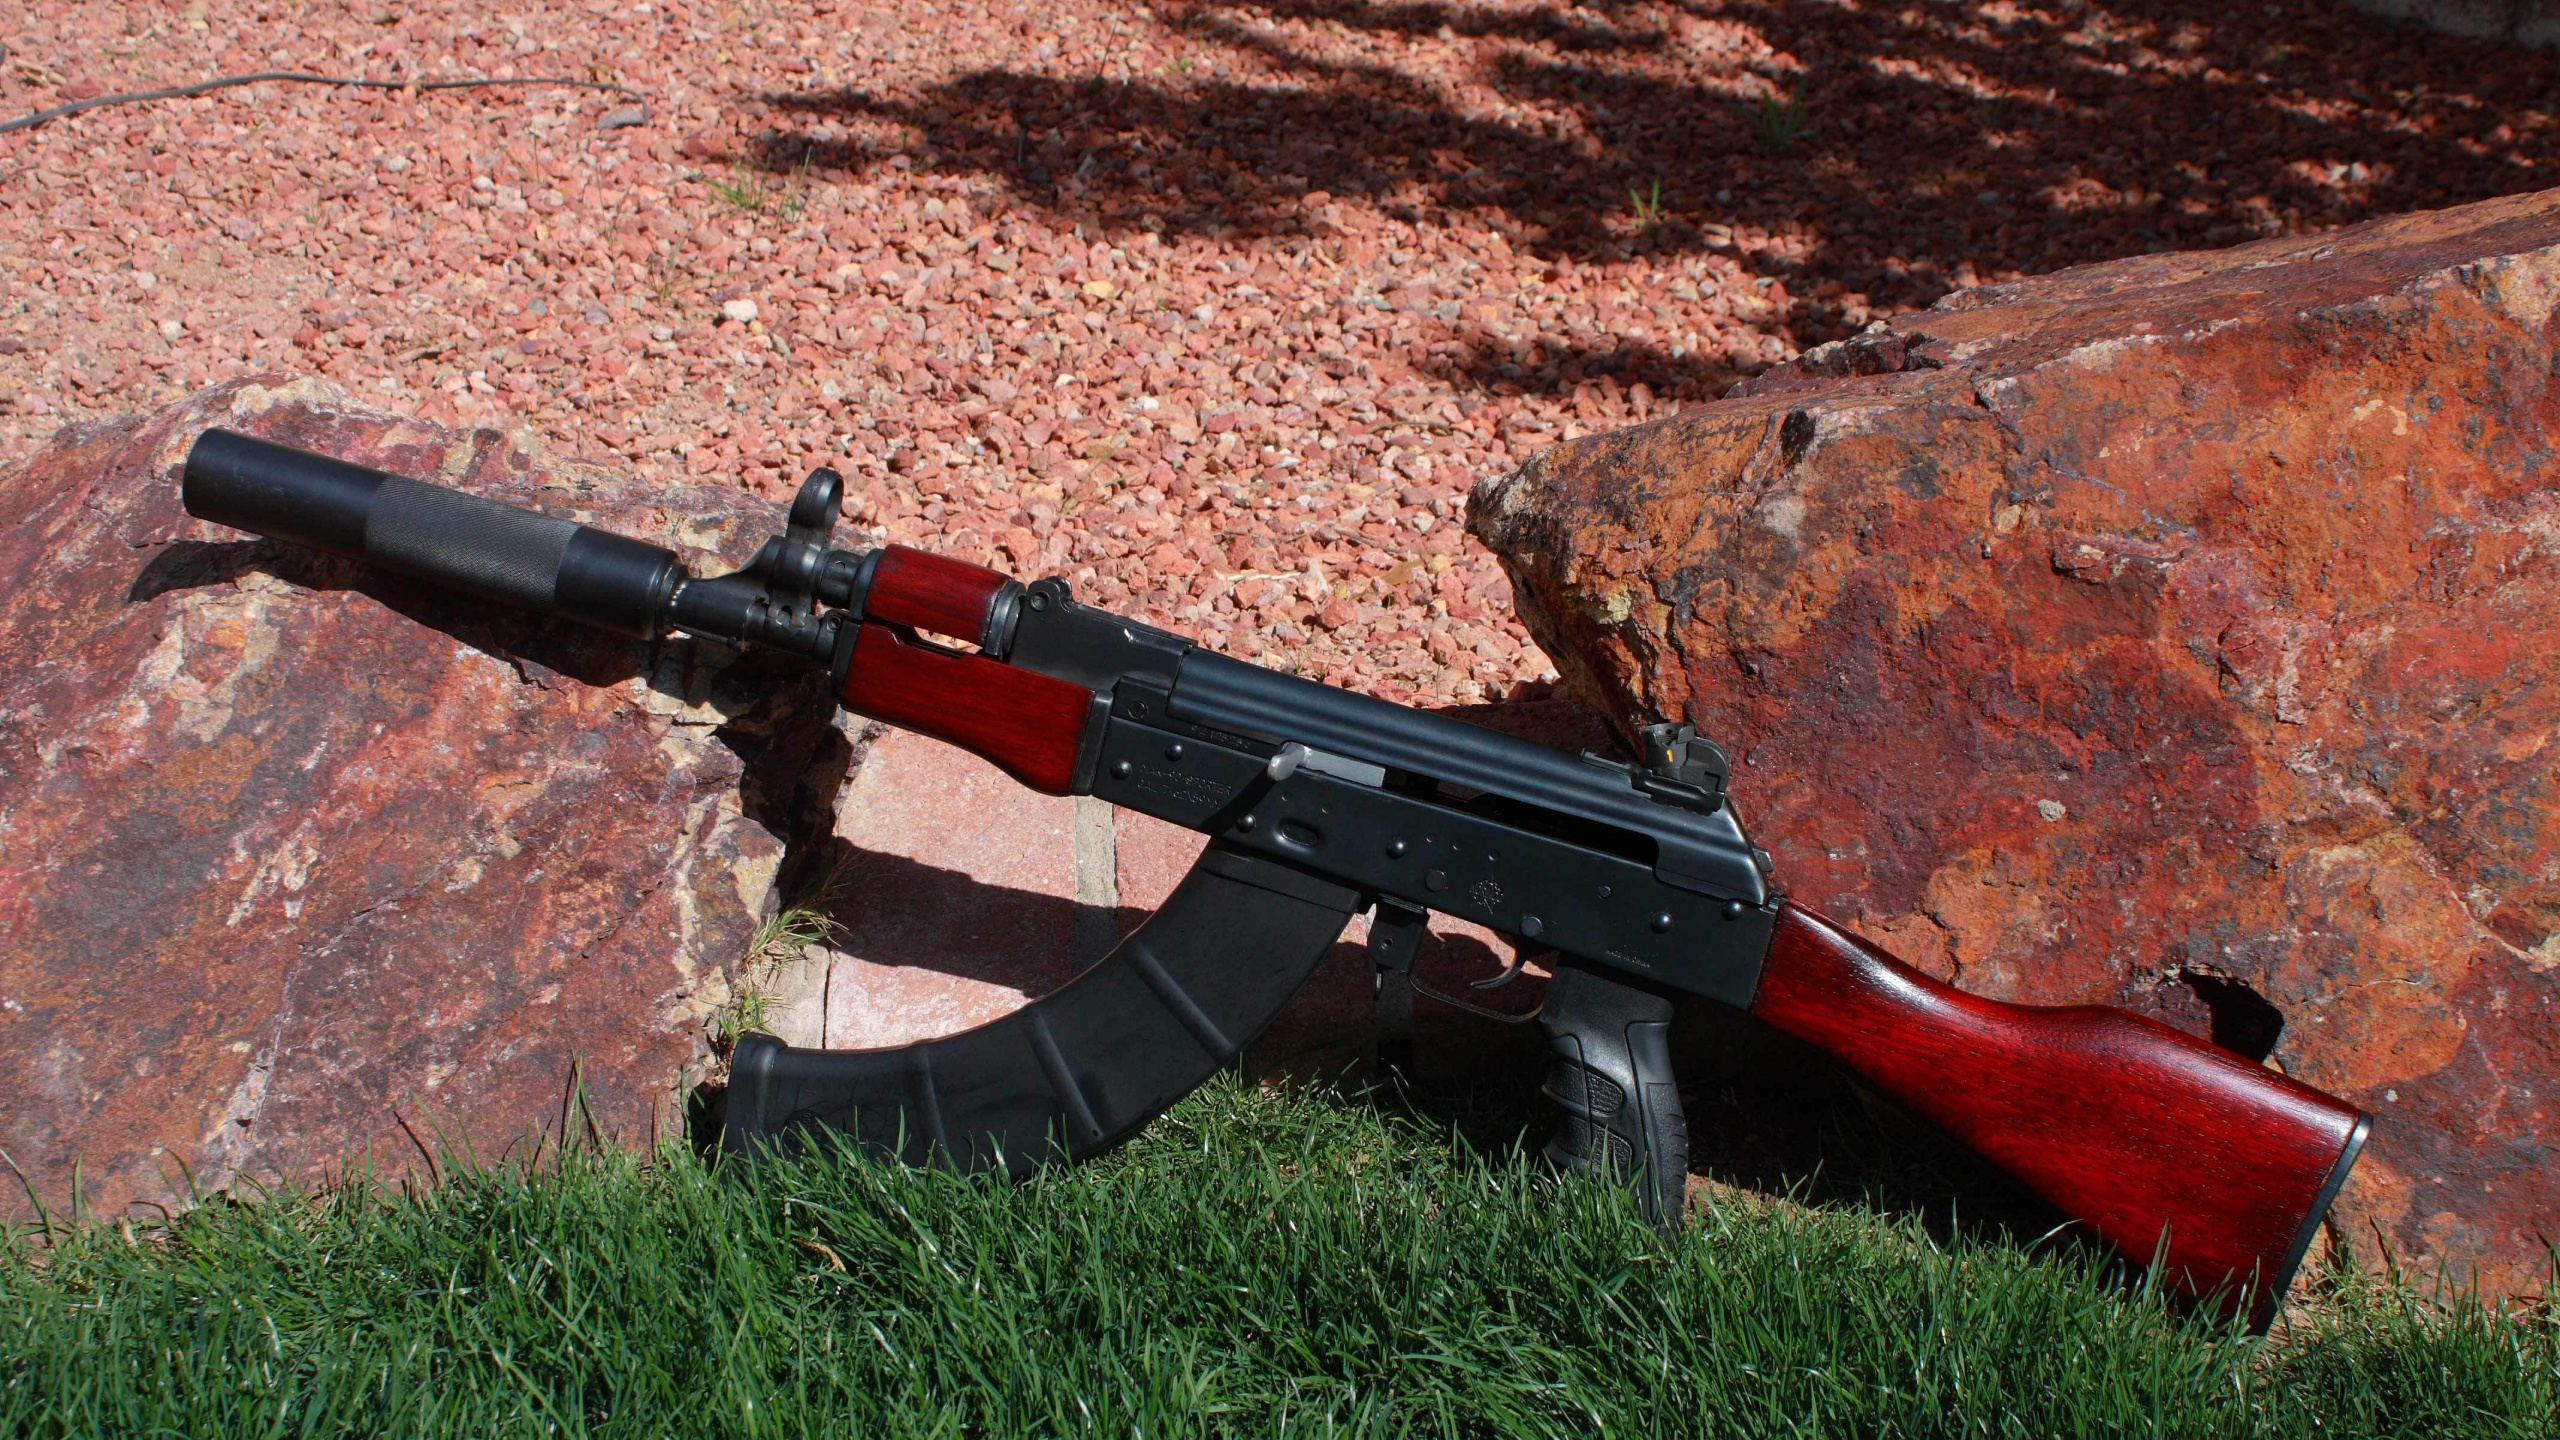 Ak-74, Feuerwaffe, Gewehr, Luftgewehr, Trigger. Wallpaper in 2560x1440 Resolution